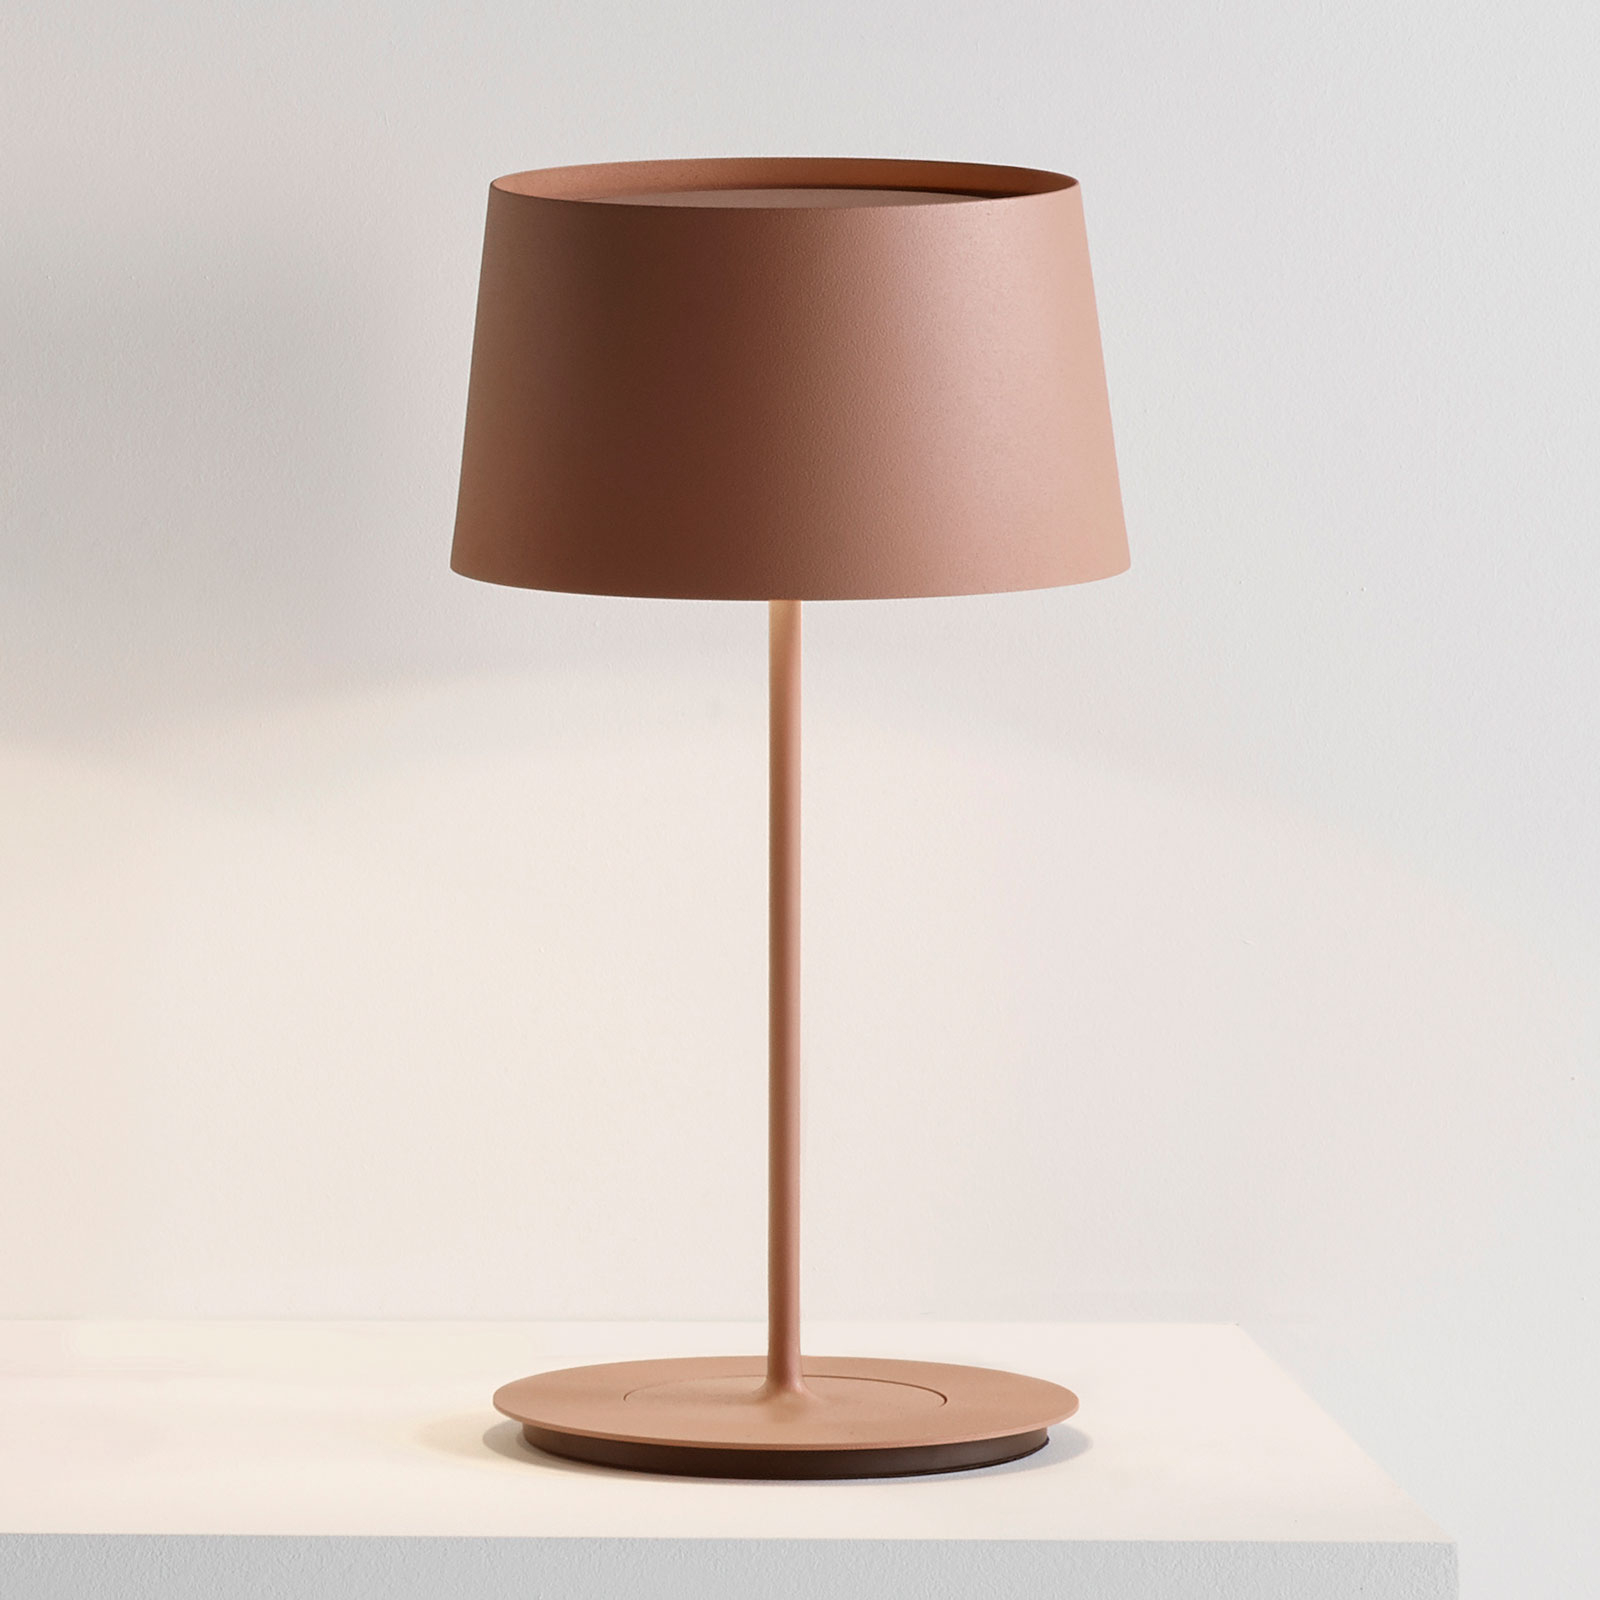 Lampa stołowa Vibia Warm 4896, Ø 22 cm, brązowa